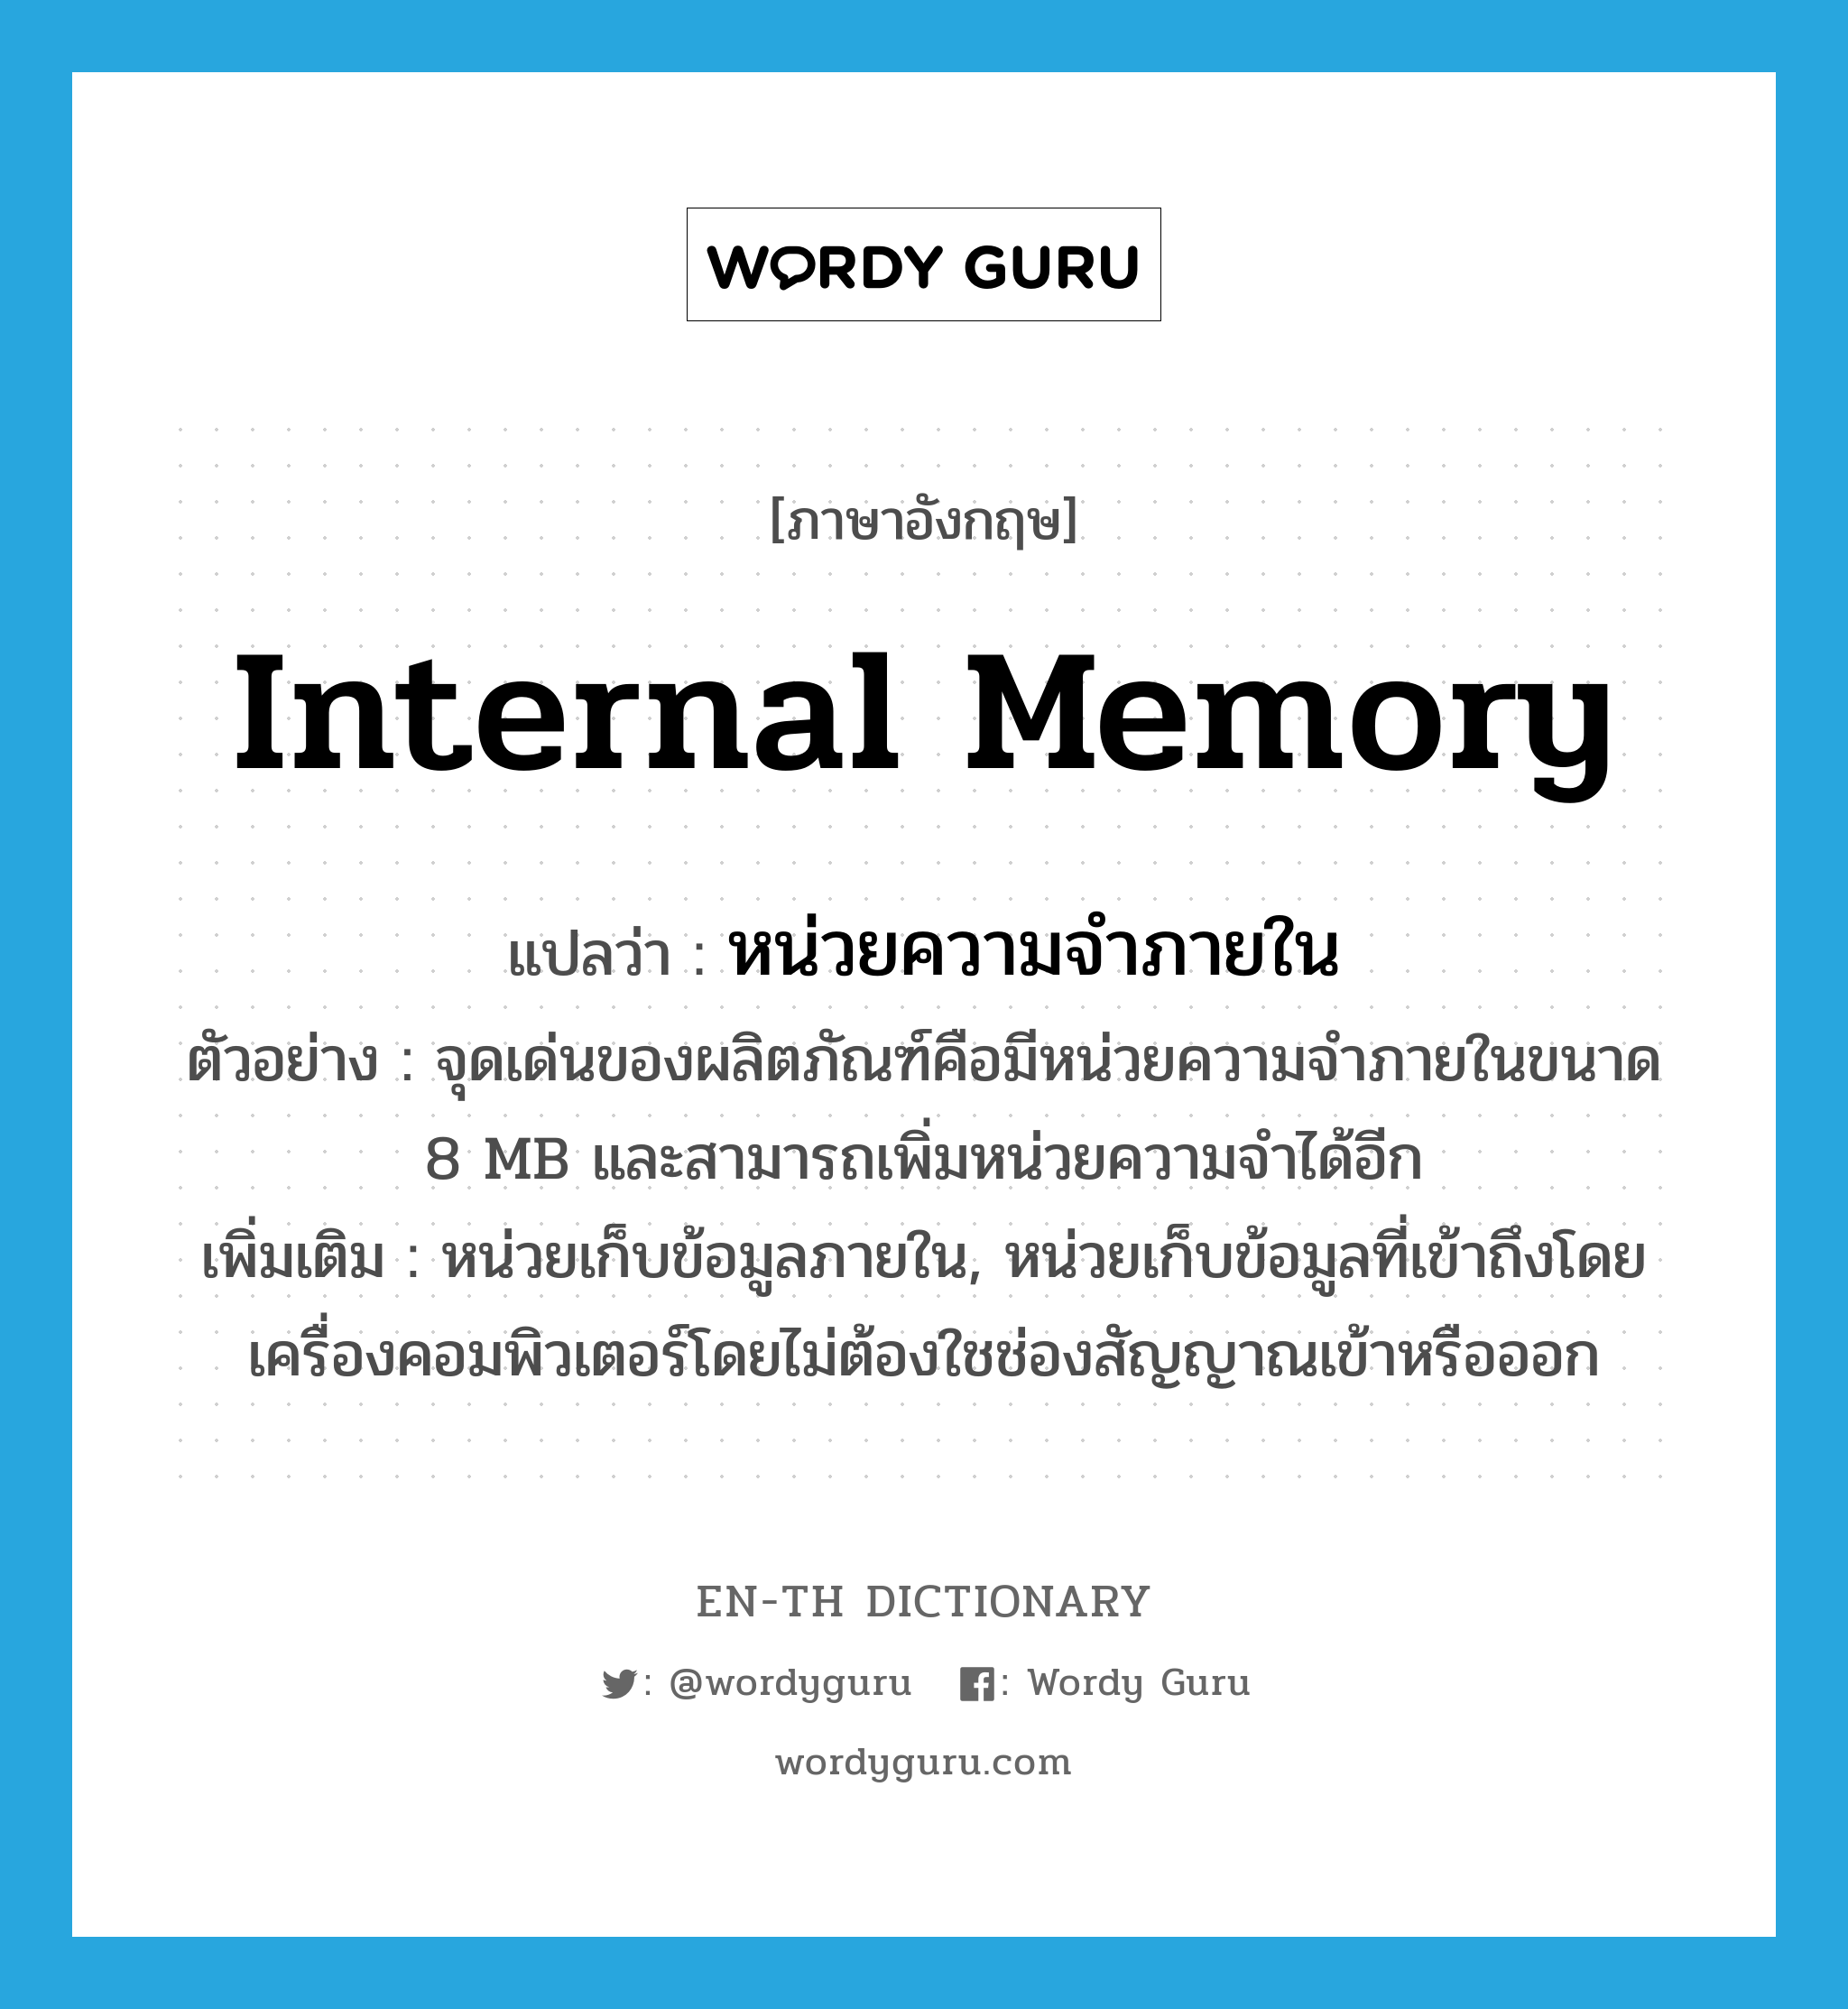 หน่วยความจำภายใน ภาษาอังกฤษ?, คำศัพท์ภาษาอังกฤษ หน่วยความจำภายใน แปลว่า internal memory ประเภท N ตัวอย่าง จุดเด่นของผลิตภัณฑ์คือมีหน่วยความจำภายในขนาด 8 MB และสามารถเพิ่มหน่วยความจำได้อีก เพิ่มเติม หน่วยเก็บข้อมูลภายใน, หน่วยเก็บข้อมูลที่เข้าถึงโดยเครื่องคอมพิวเตอร์โดยไม่ต้องใชช่องสัญญาณเข้าหรือออก หมวด N